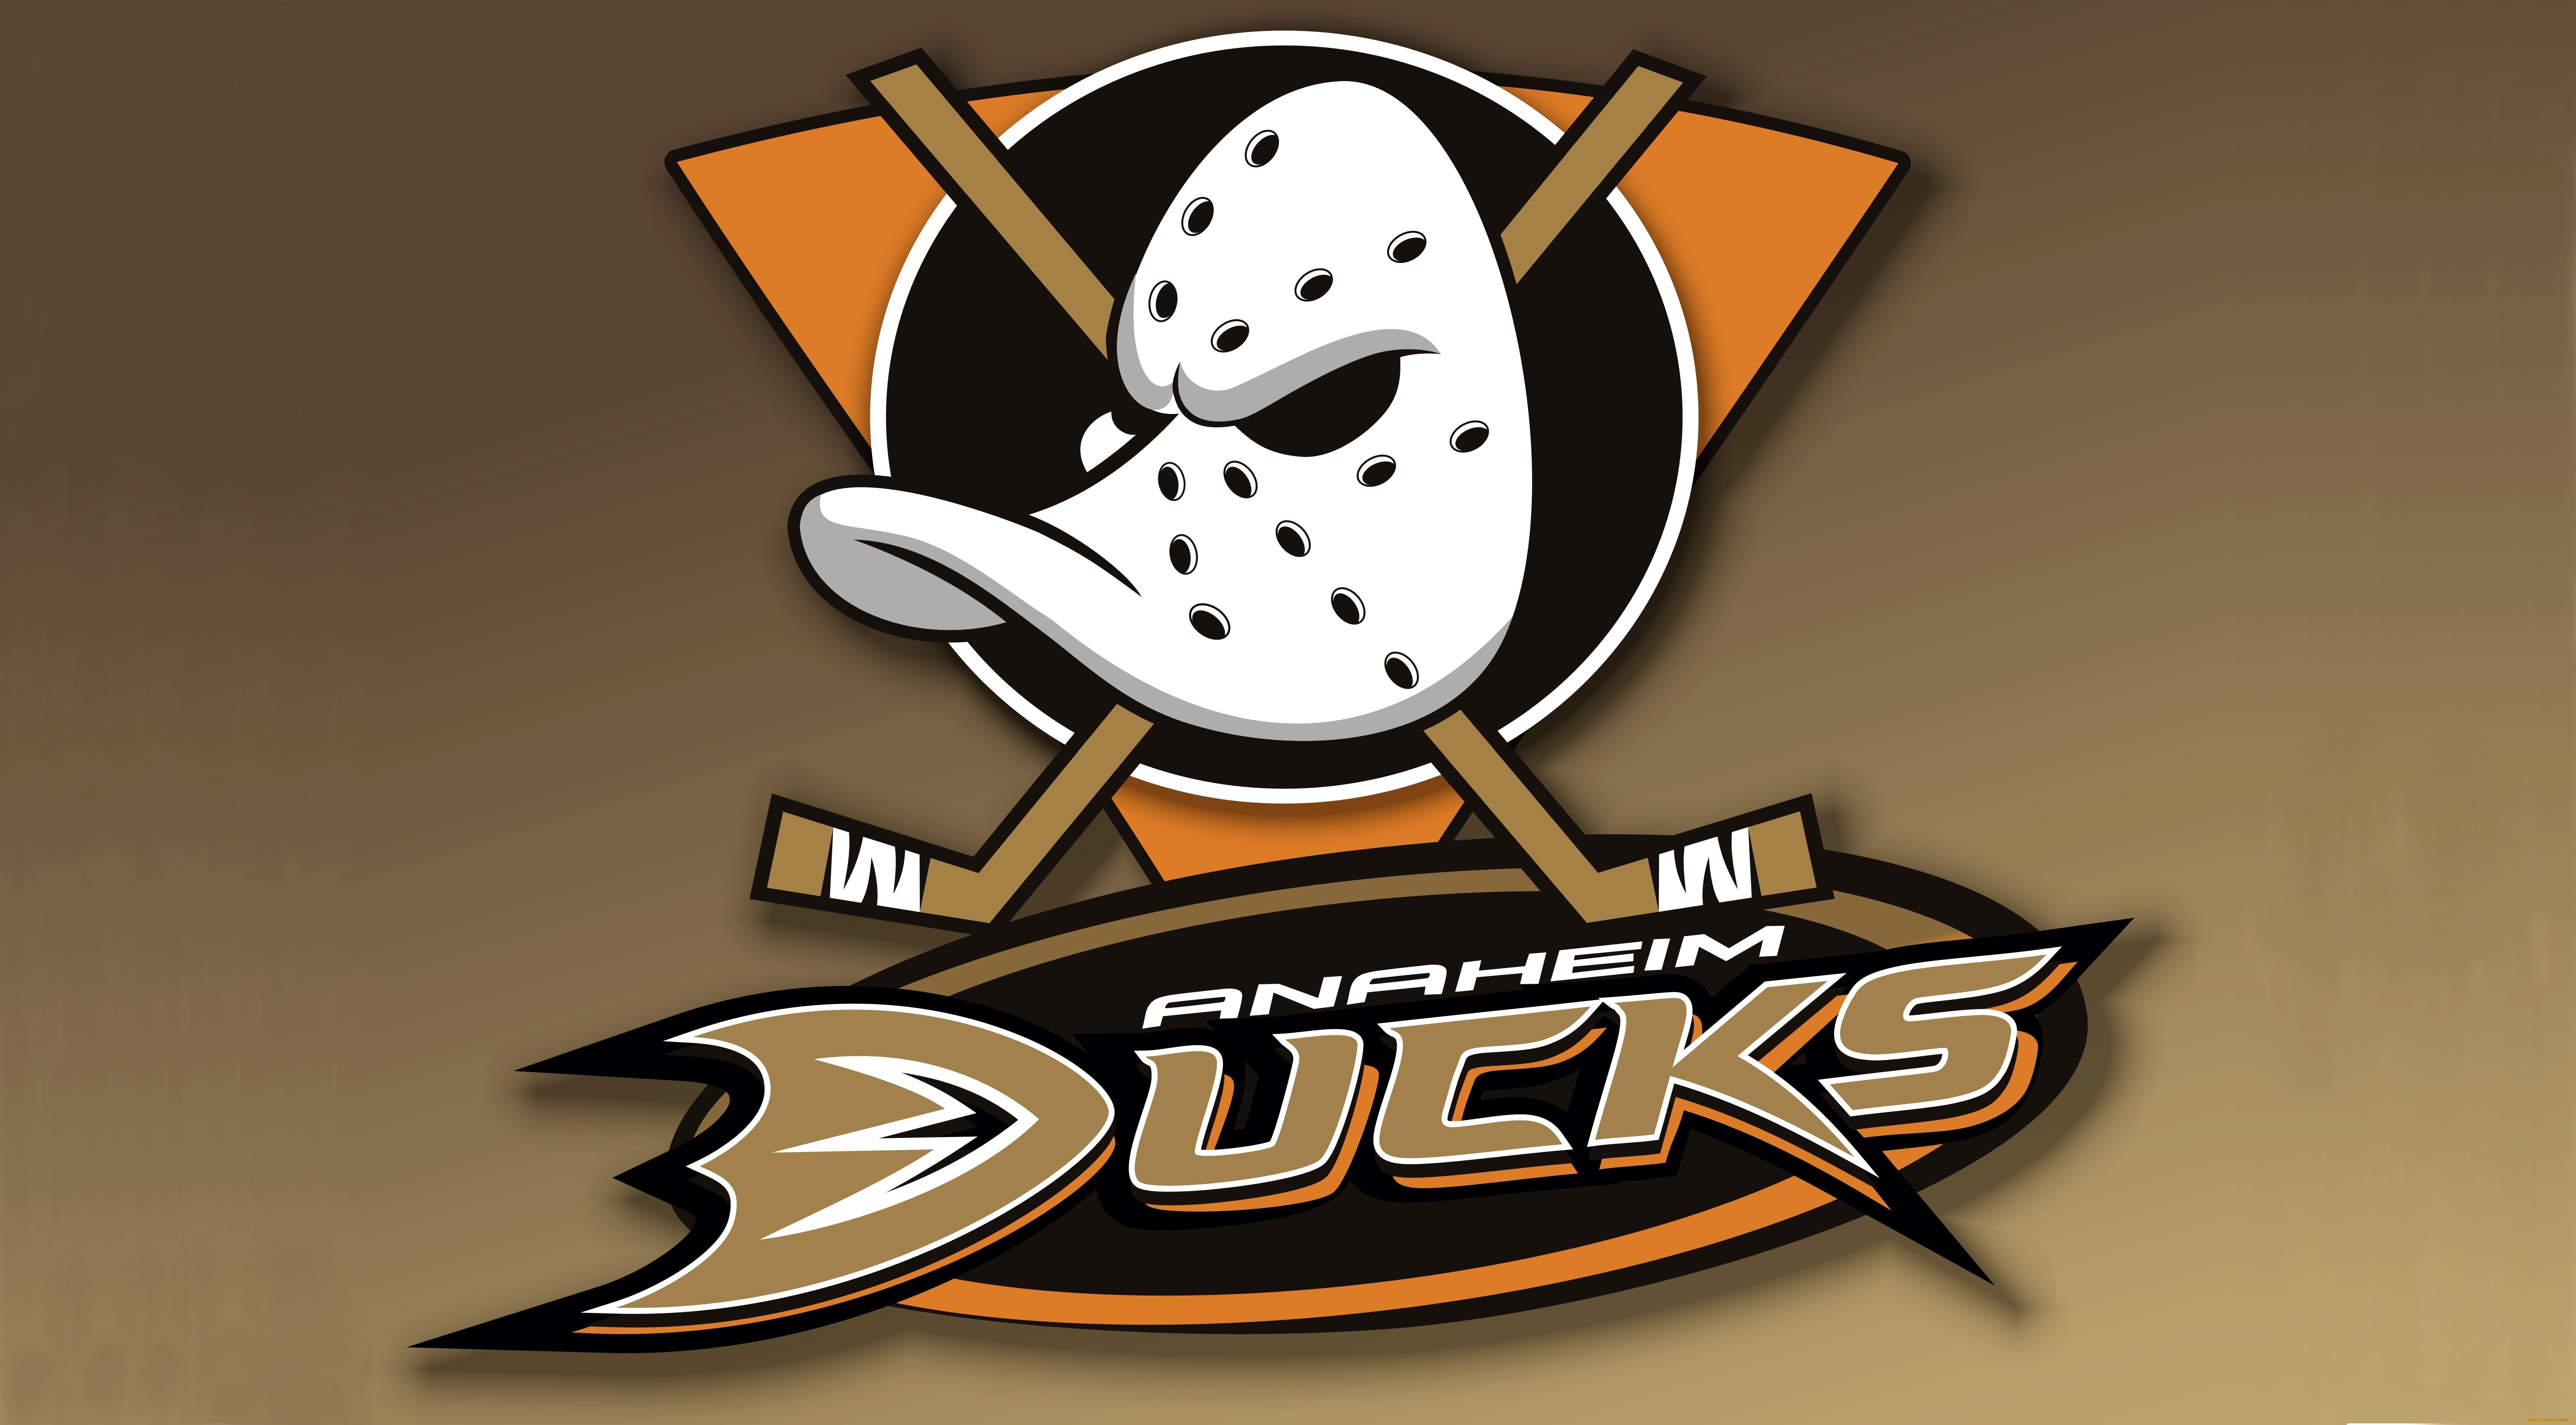 Хк пк. Хоккейная команда NHL логотипы. Хоккейная команда Анахайм Дакс. Команда Anaheim Ducks хоккейная. Команда НХЛ Дакс.